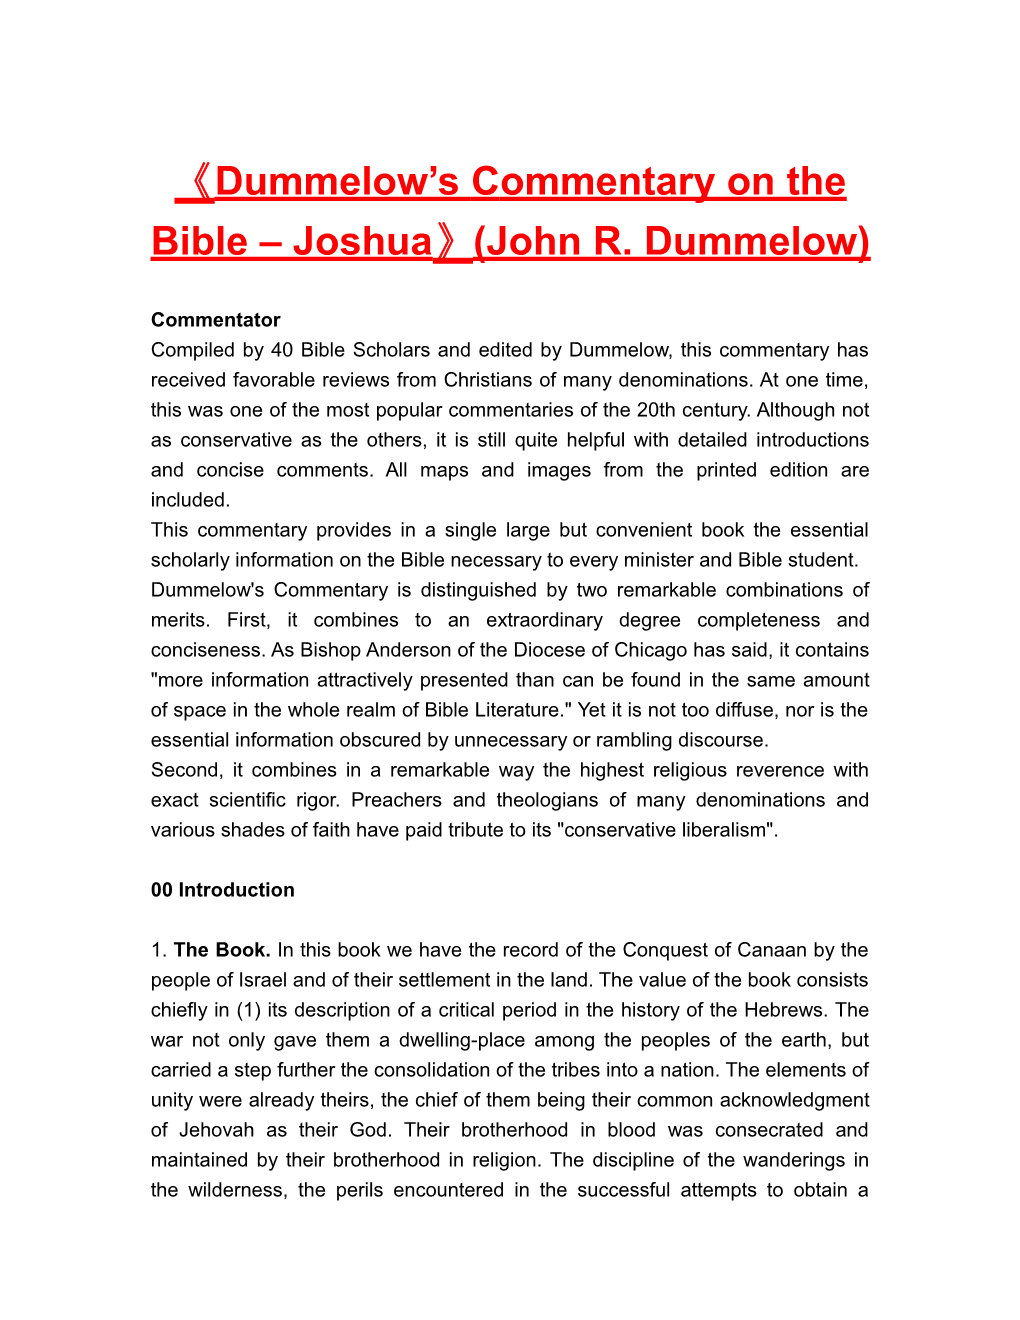 Dummelow Scommentaryon the Bible Joshua (John R. Dummelow)